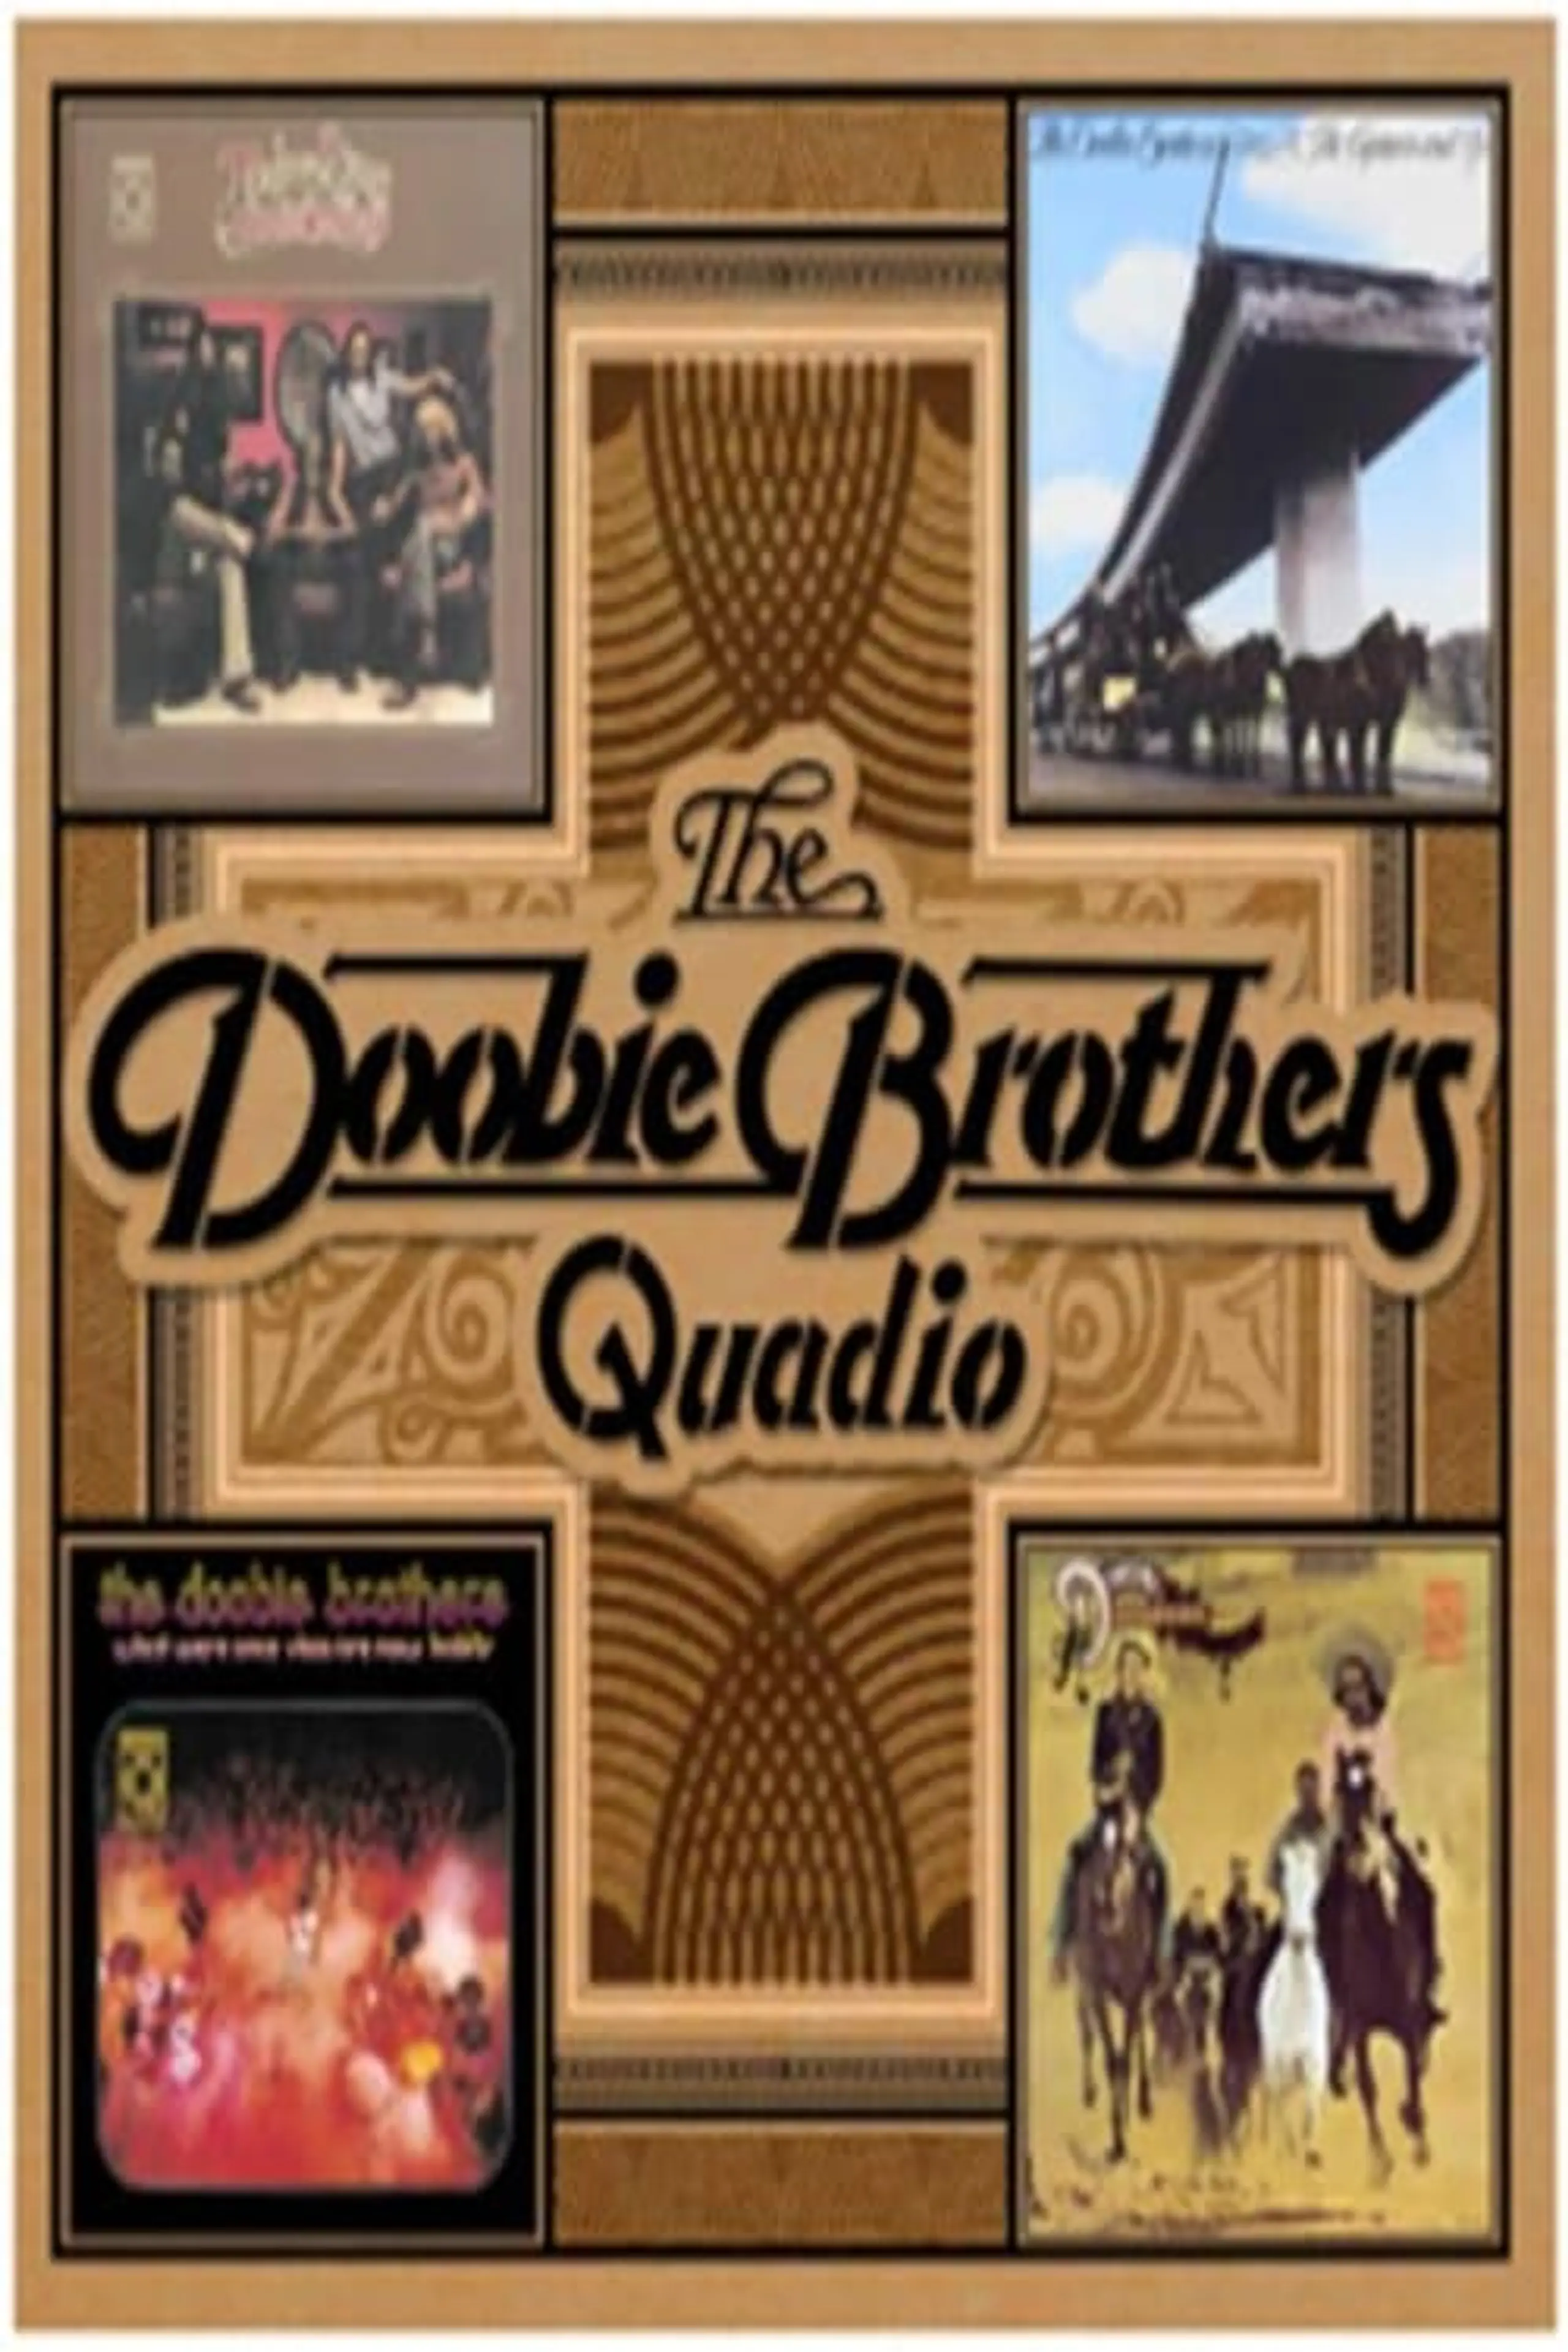 The Doobie Brothers - Quadio Box Set